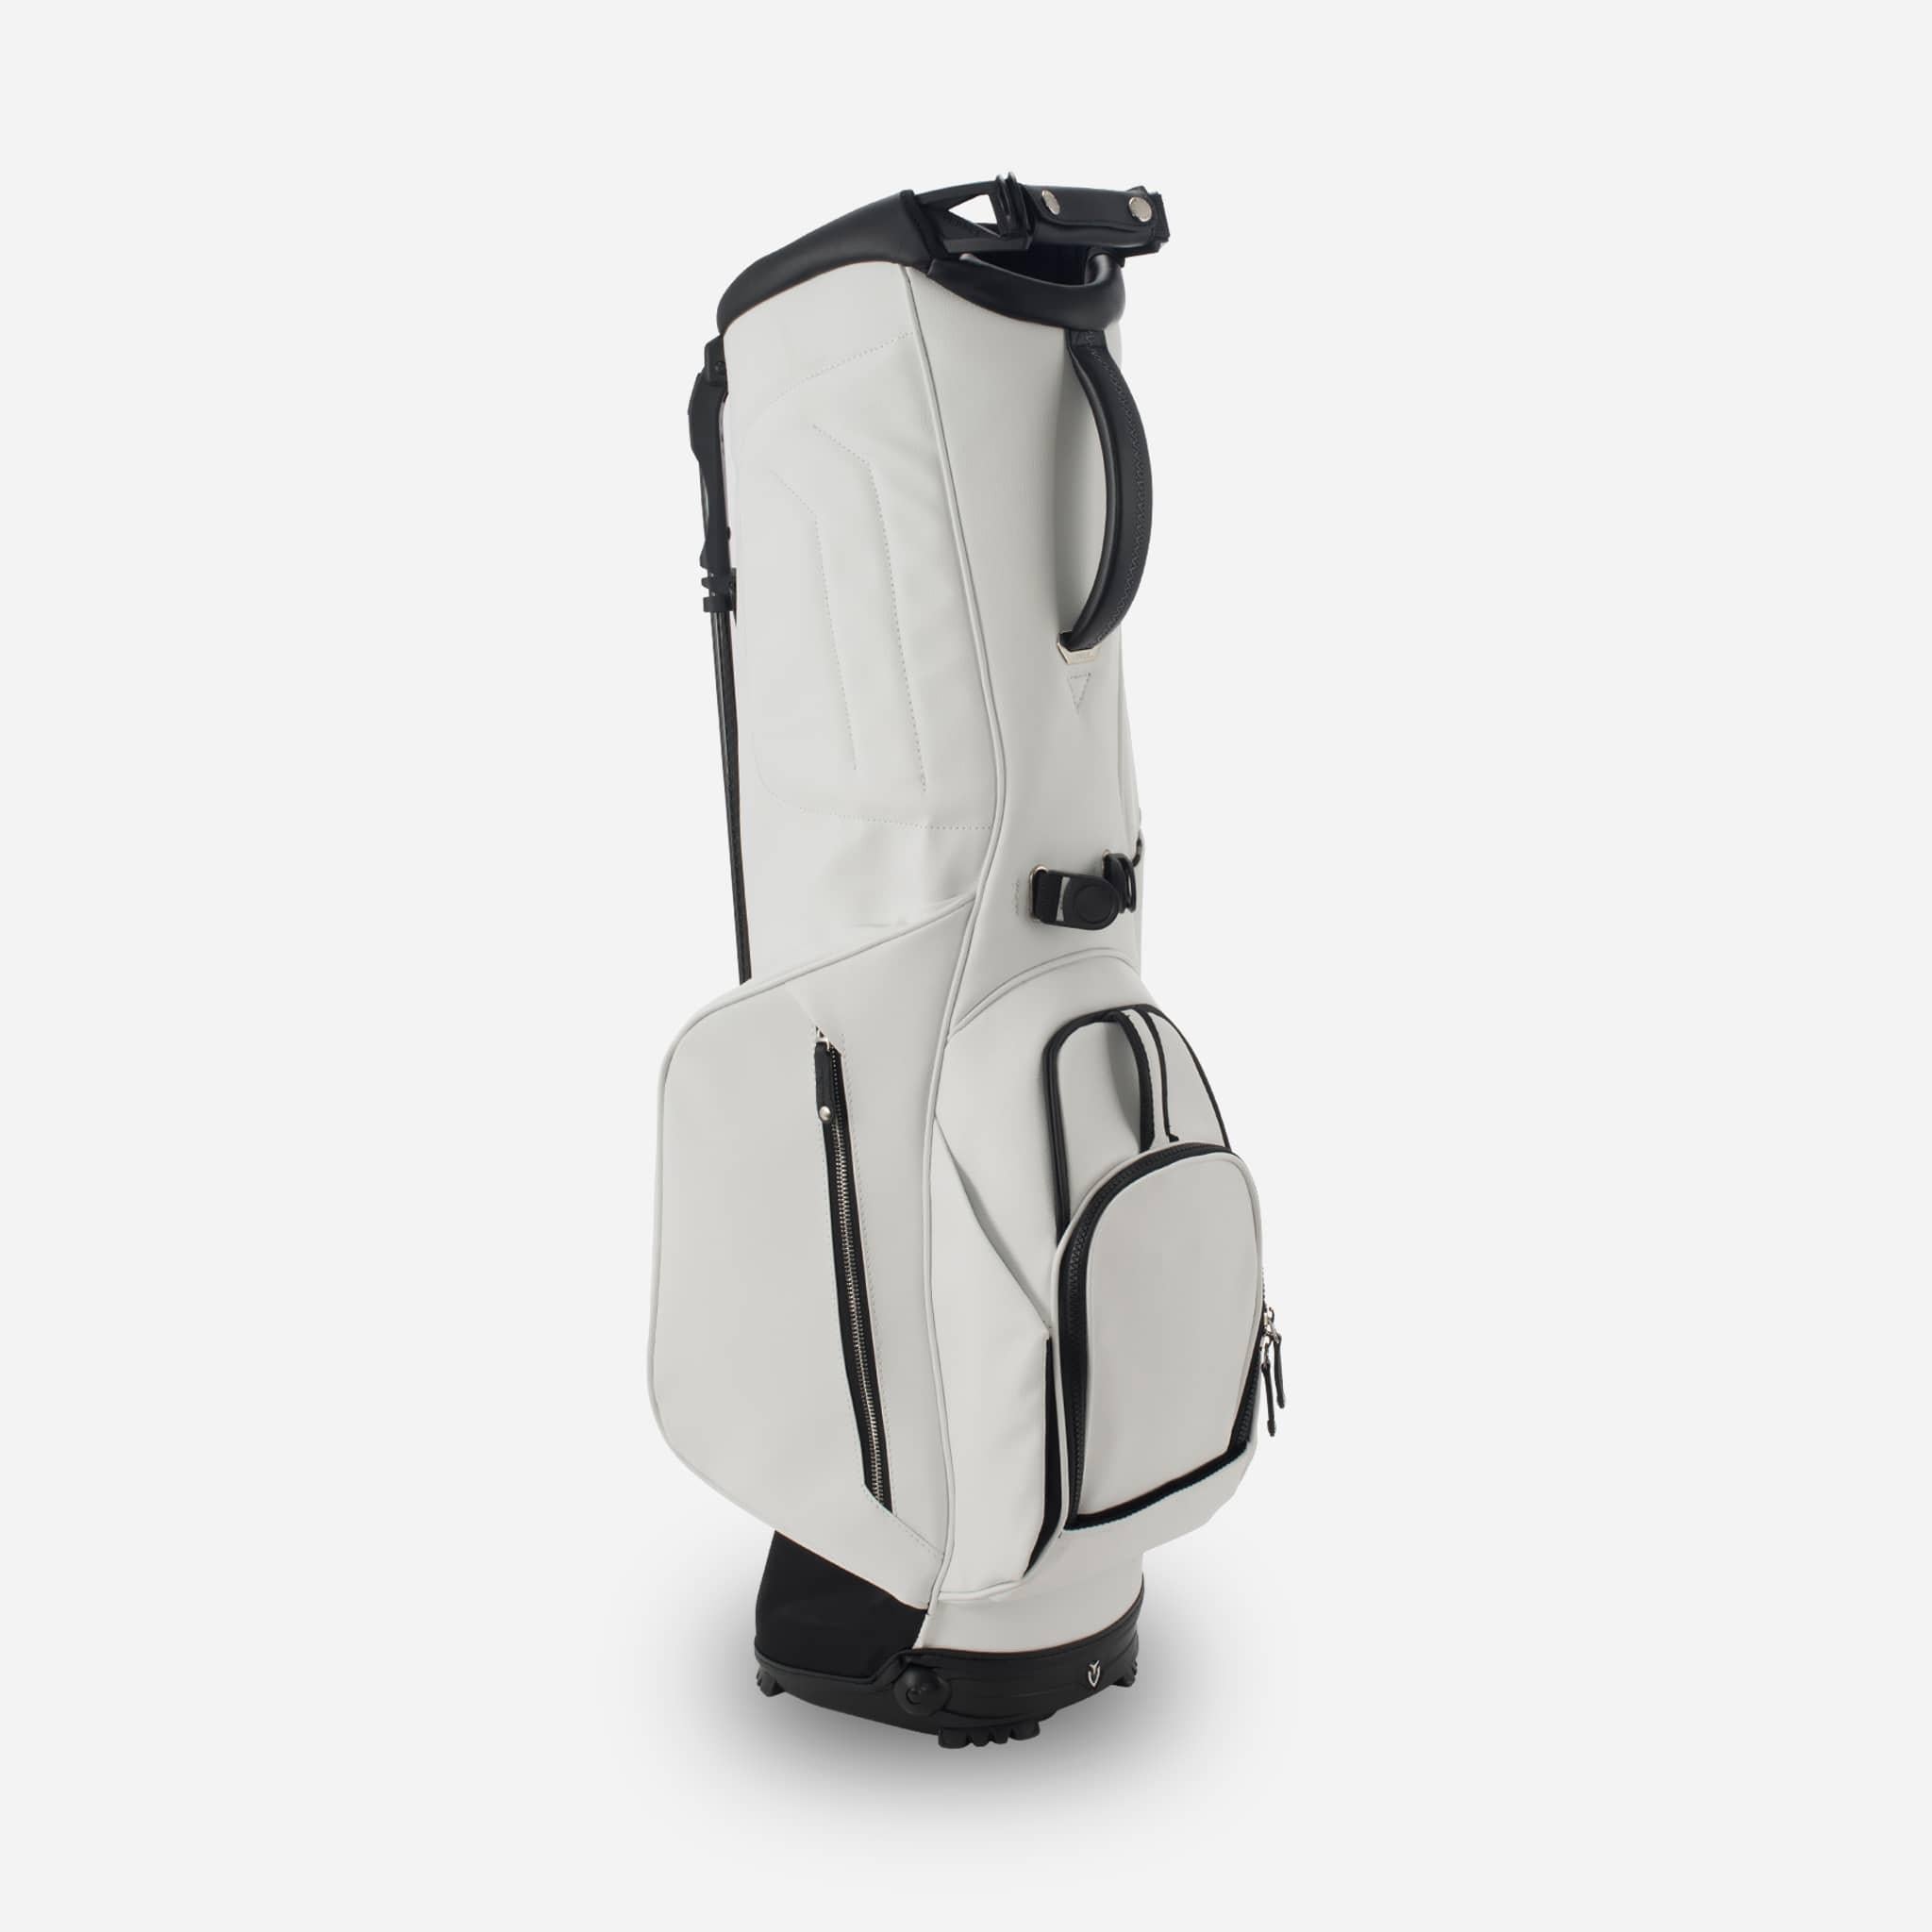 Vessel - VLS LUX Stand Bag